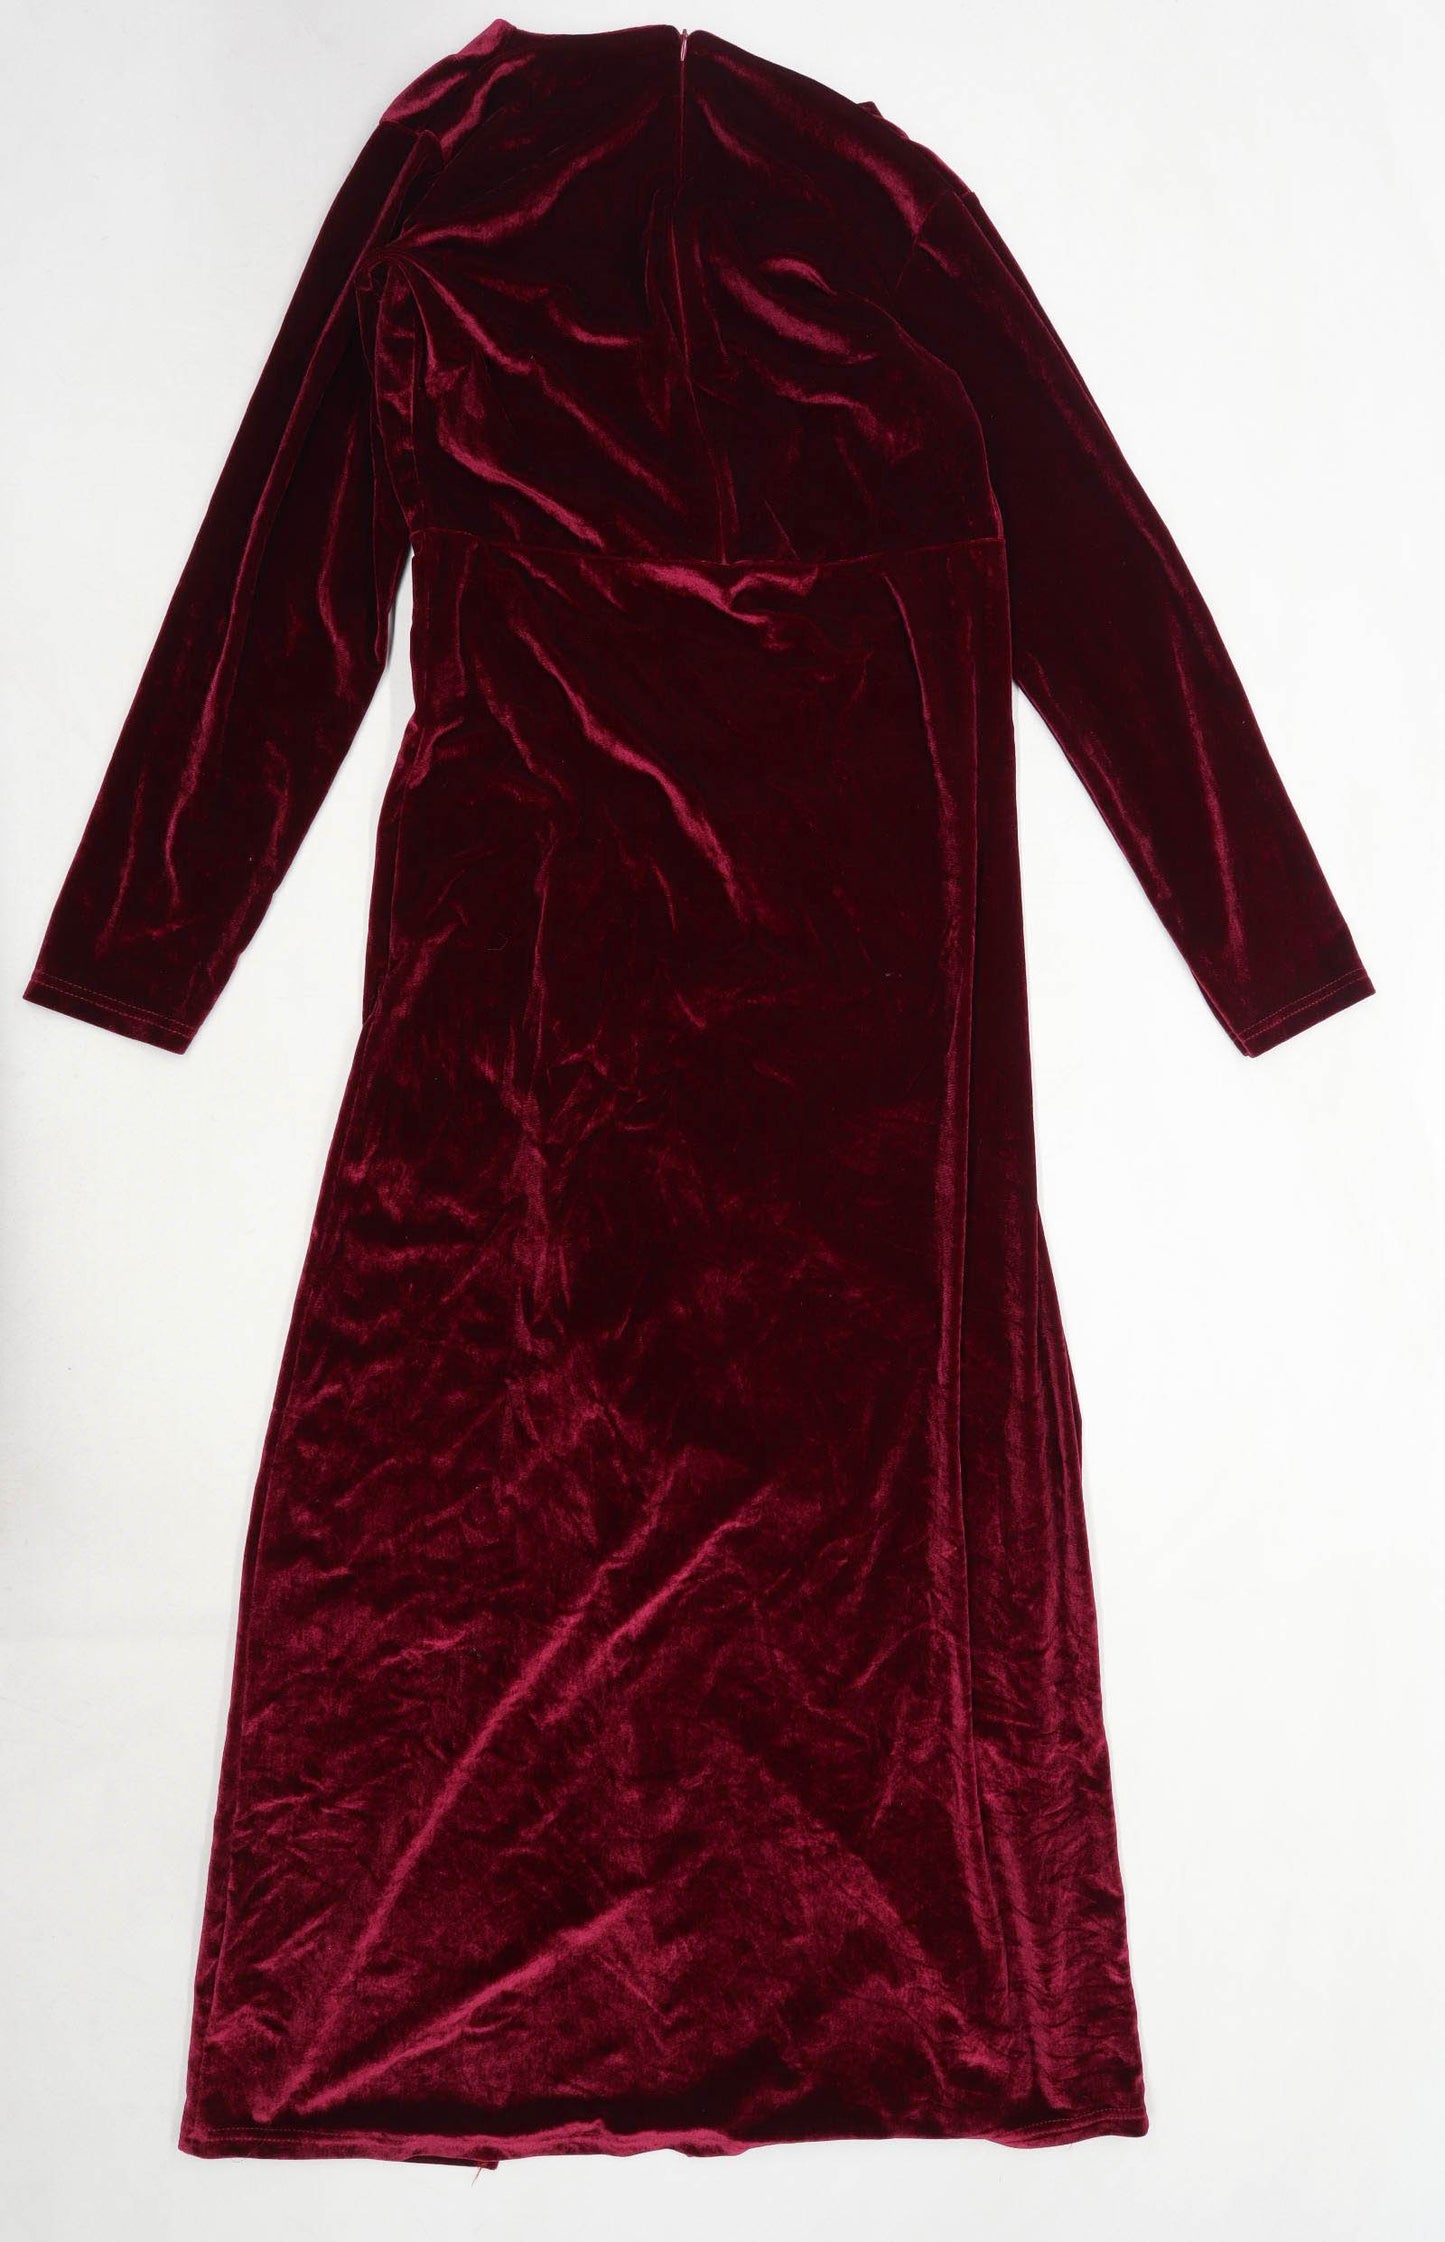 Preworn Womens Size L Cotton Blend Burgundy Maxi Dress (Regular)